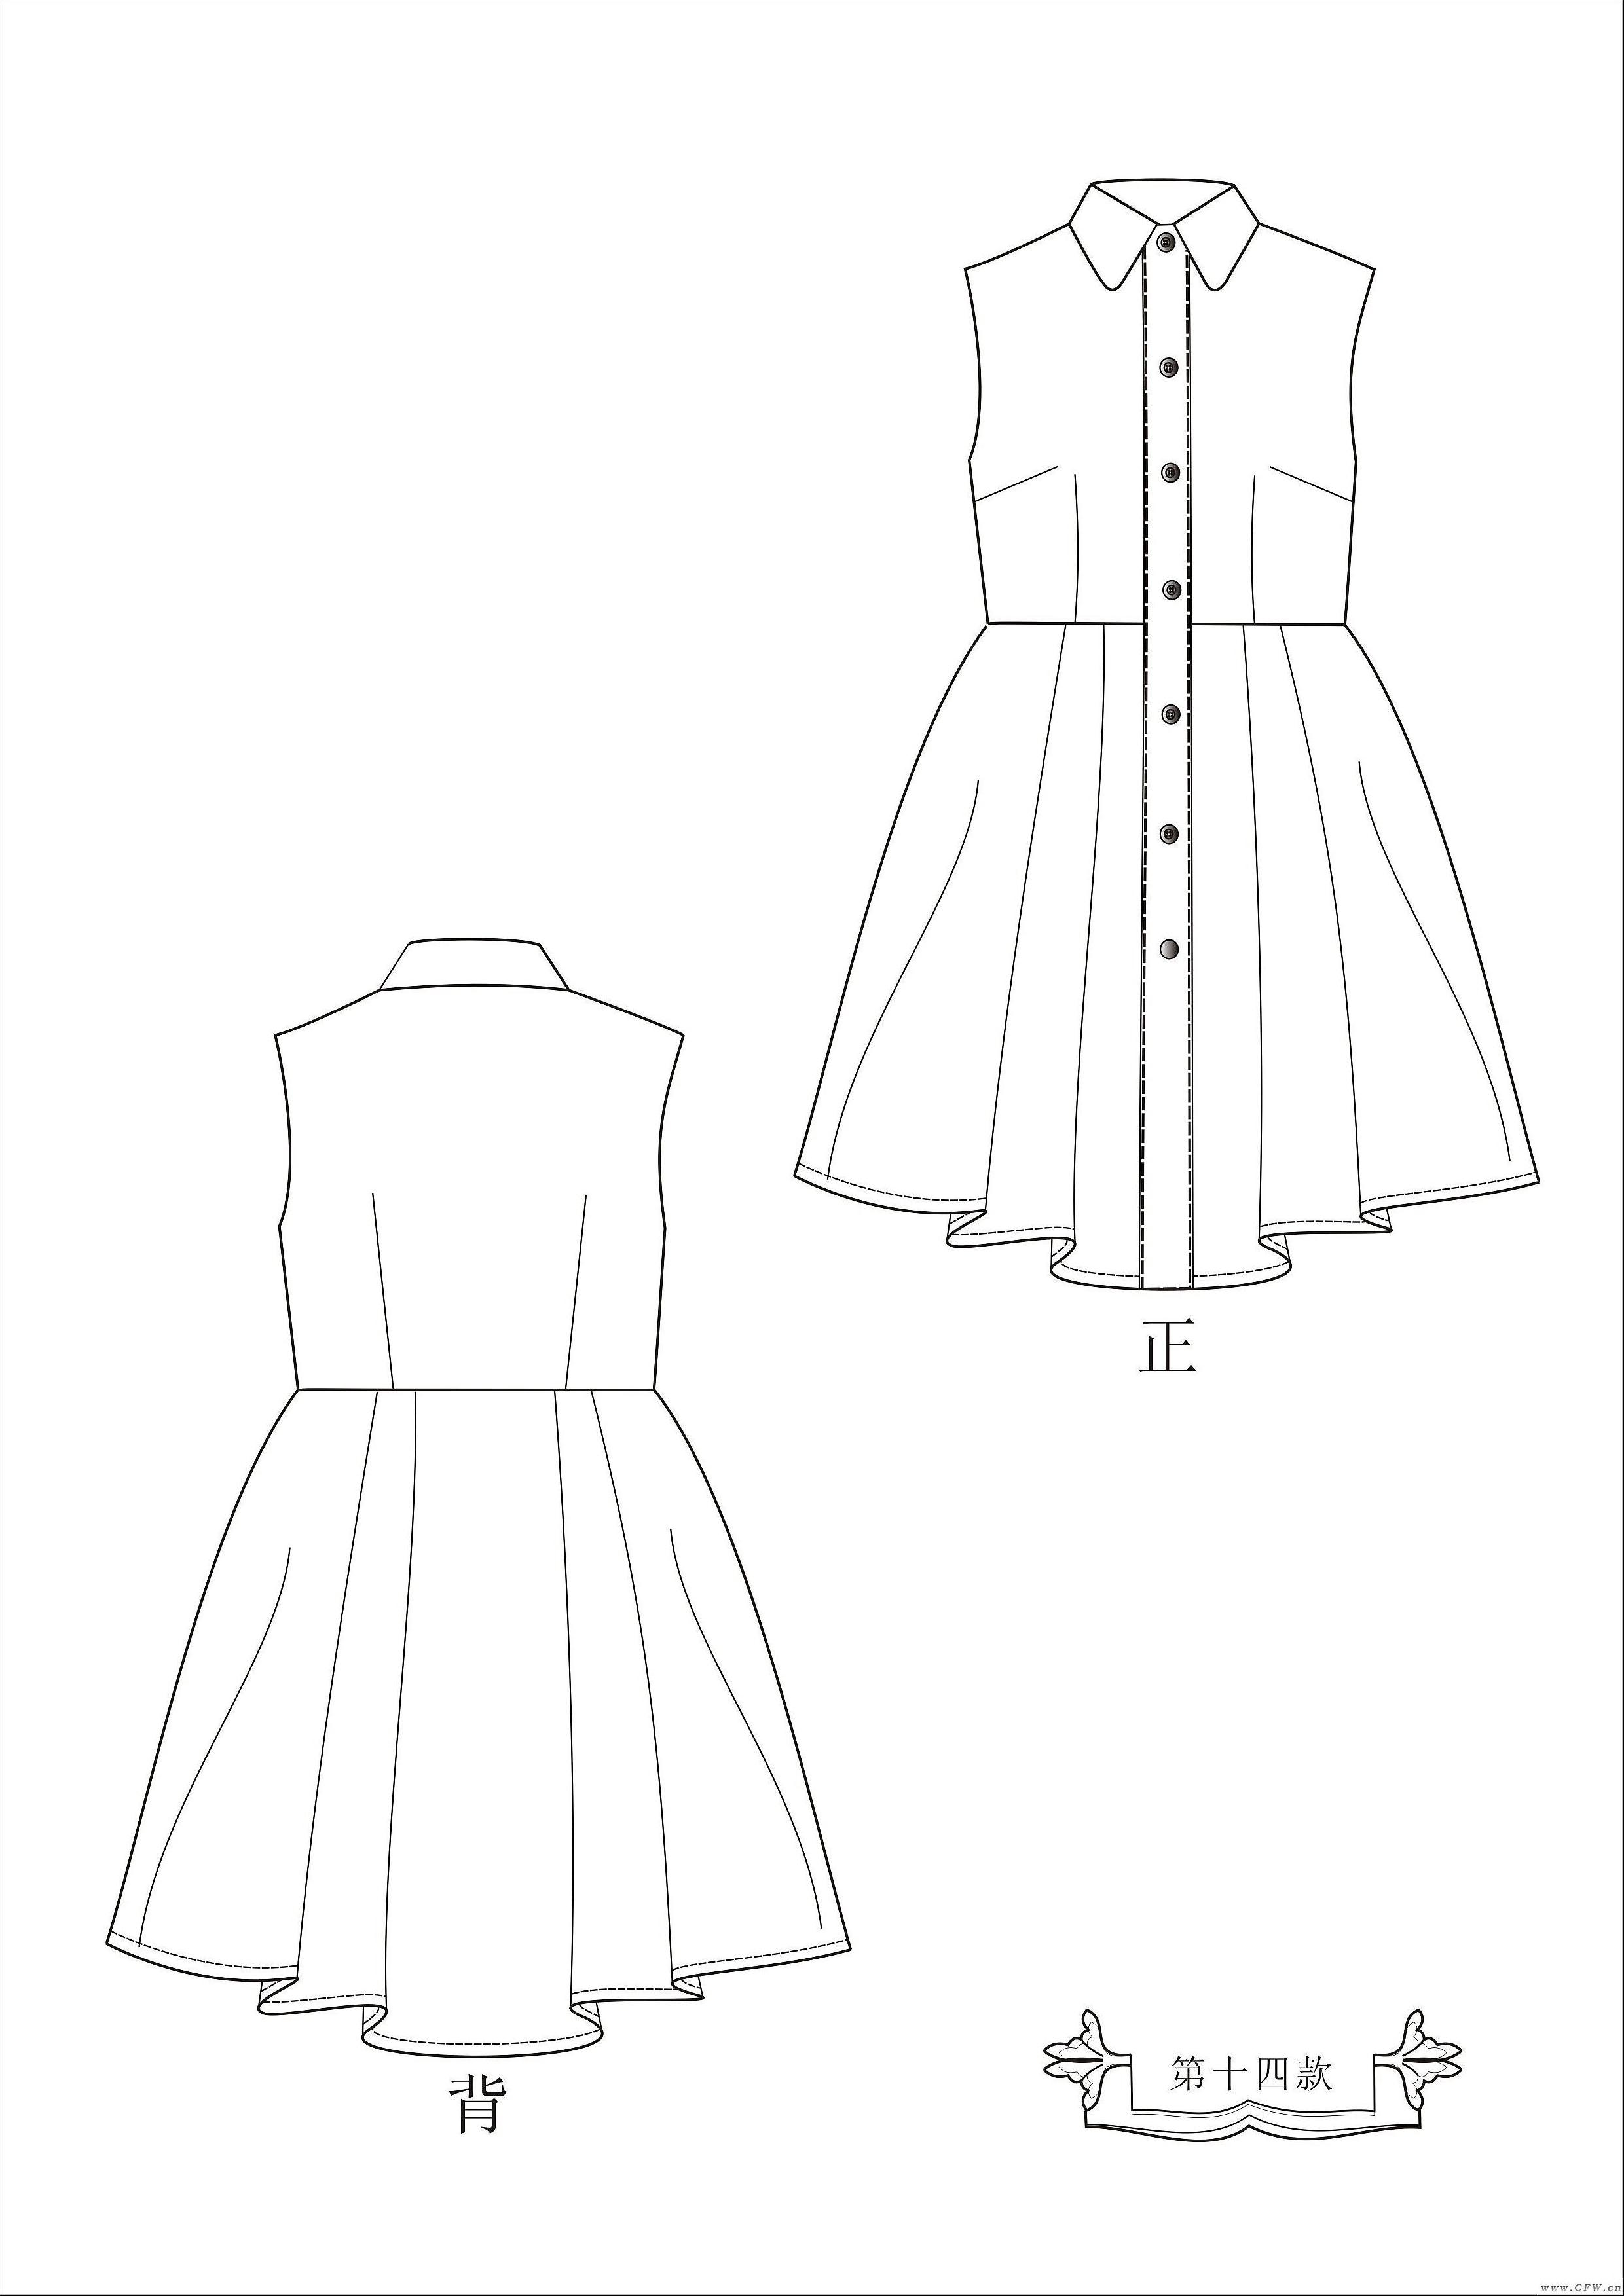 碎摺裙摆在婚纱礼服中的应用 - ShiniUni婚纱礼服高级定制设计 - 设计师品牌